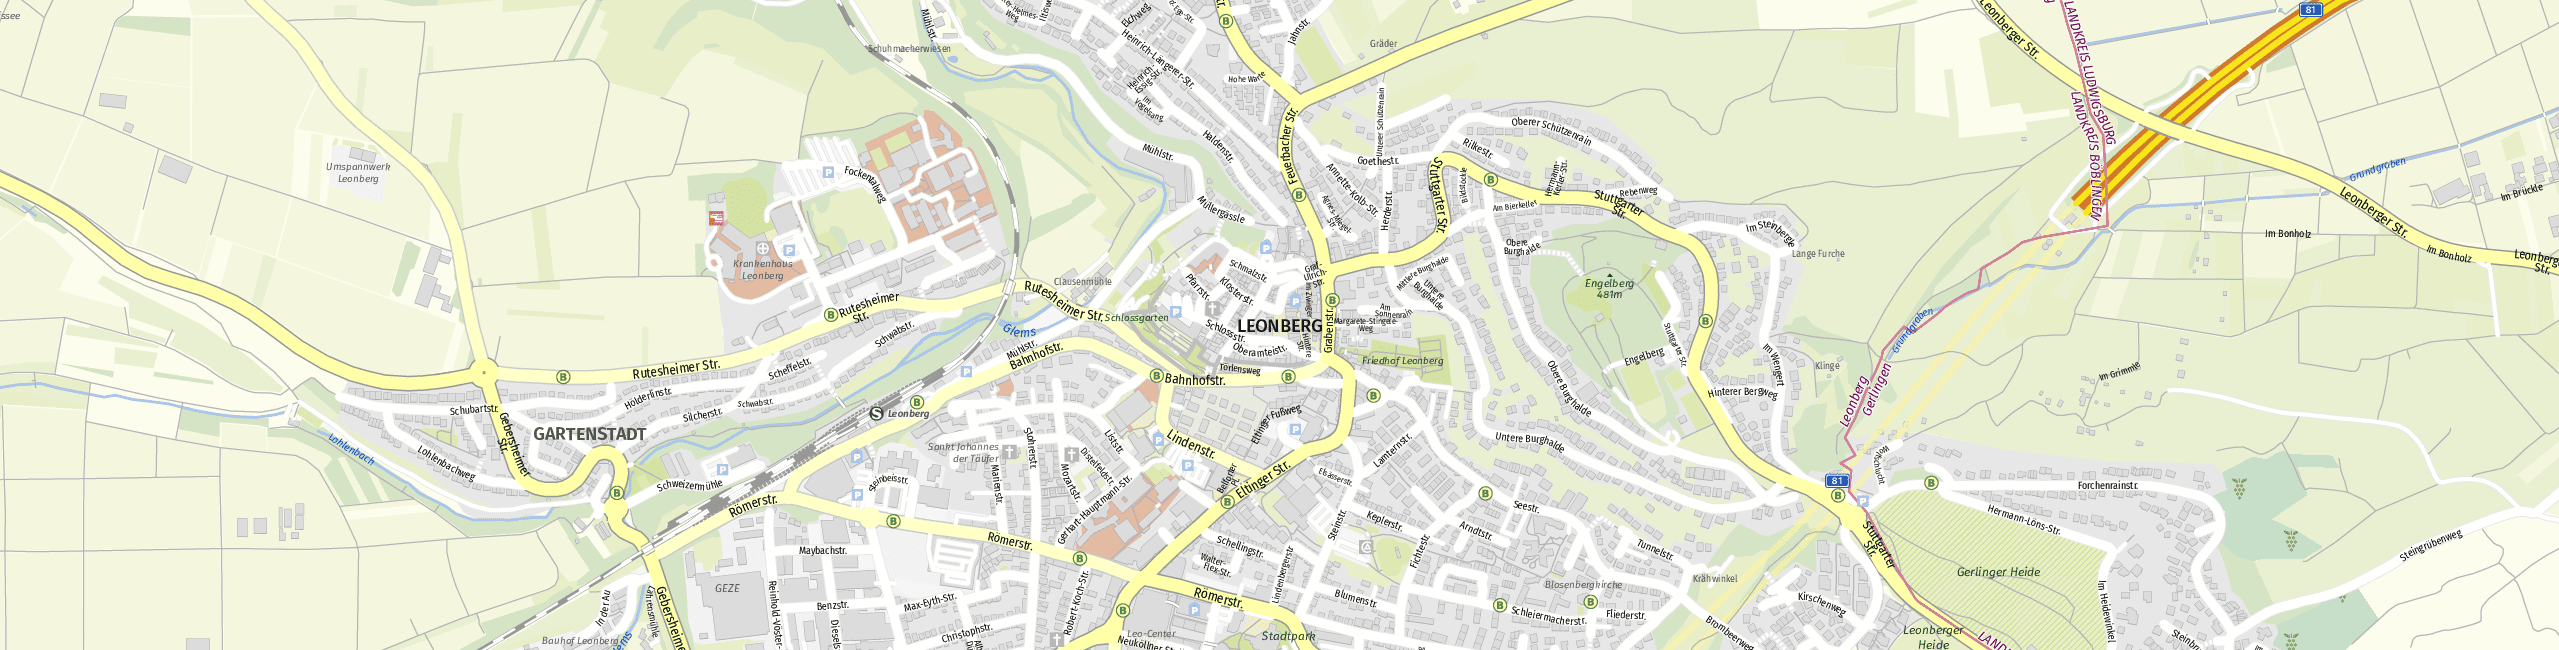 Stadtplan Leonberg zum Downloaden.